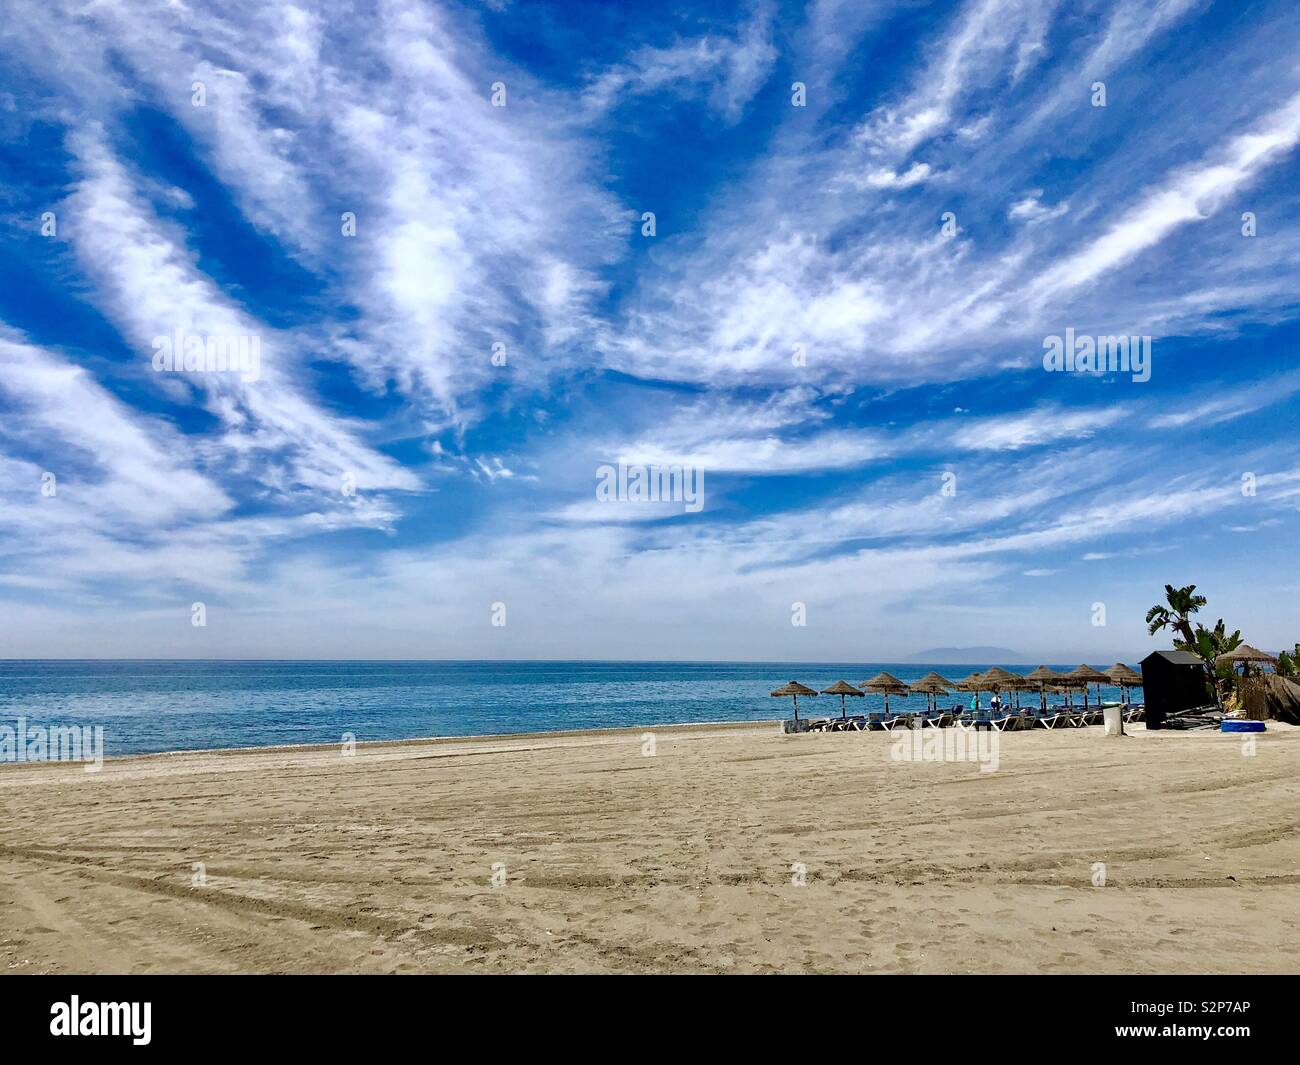 Una scena di spiaggia in Torrox Costa del Sol Spagna mostra profondo cielo blu, la sabbia dorata e il mare blu. Sfumature di spiaggia sono a metà distanza. Foto Stock